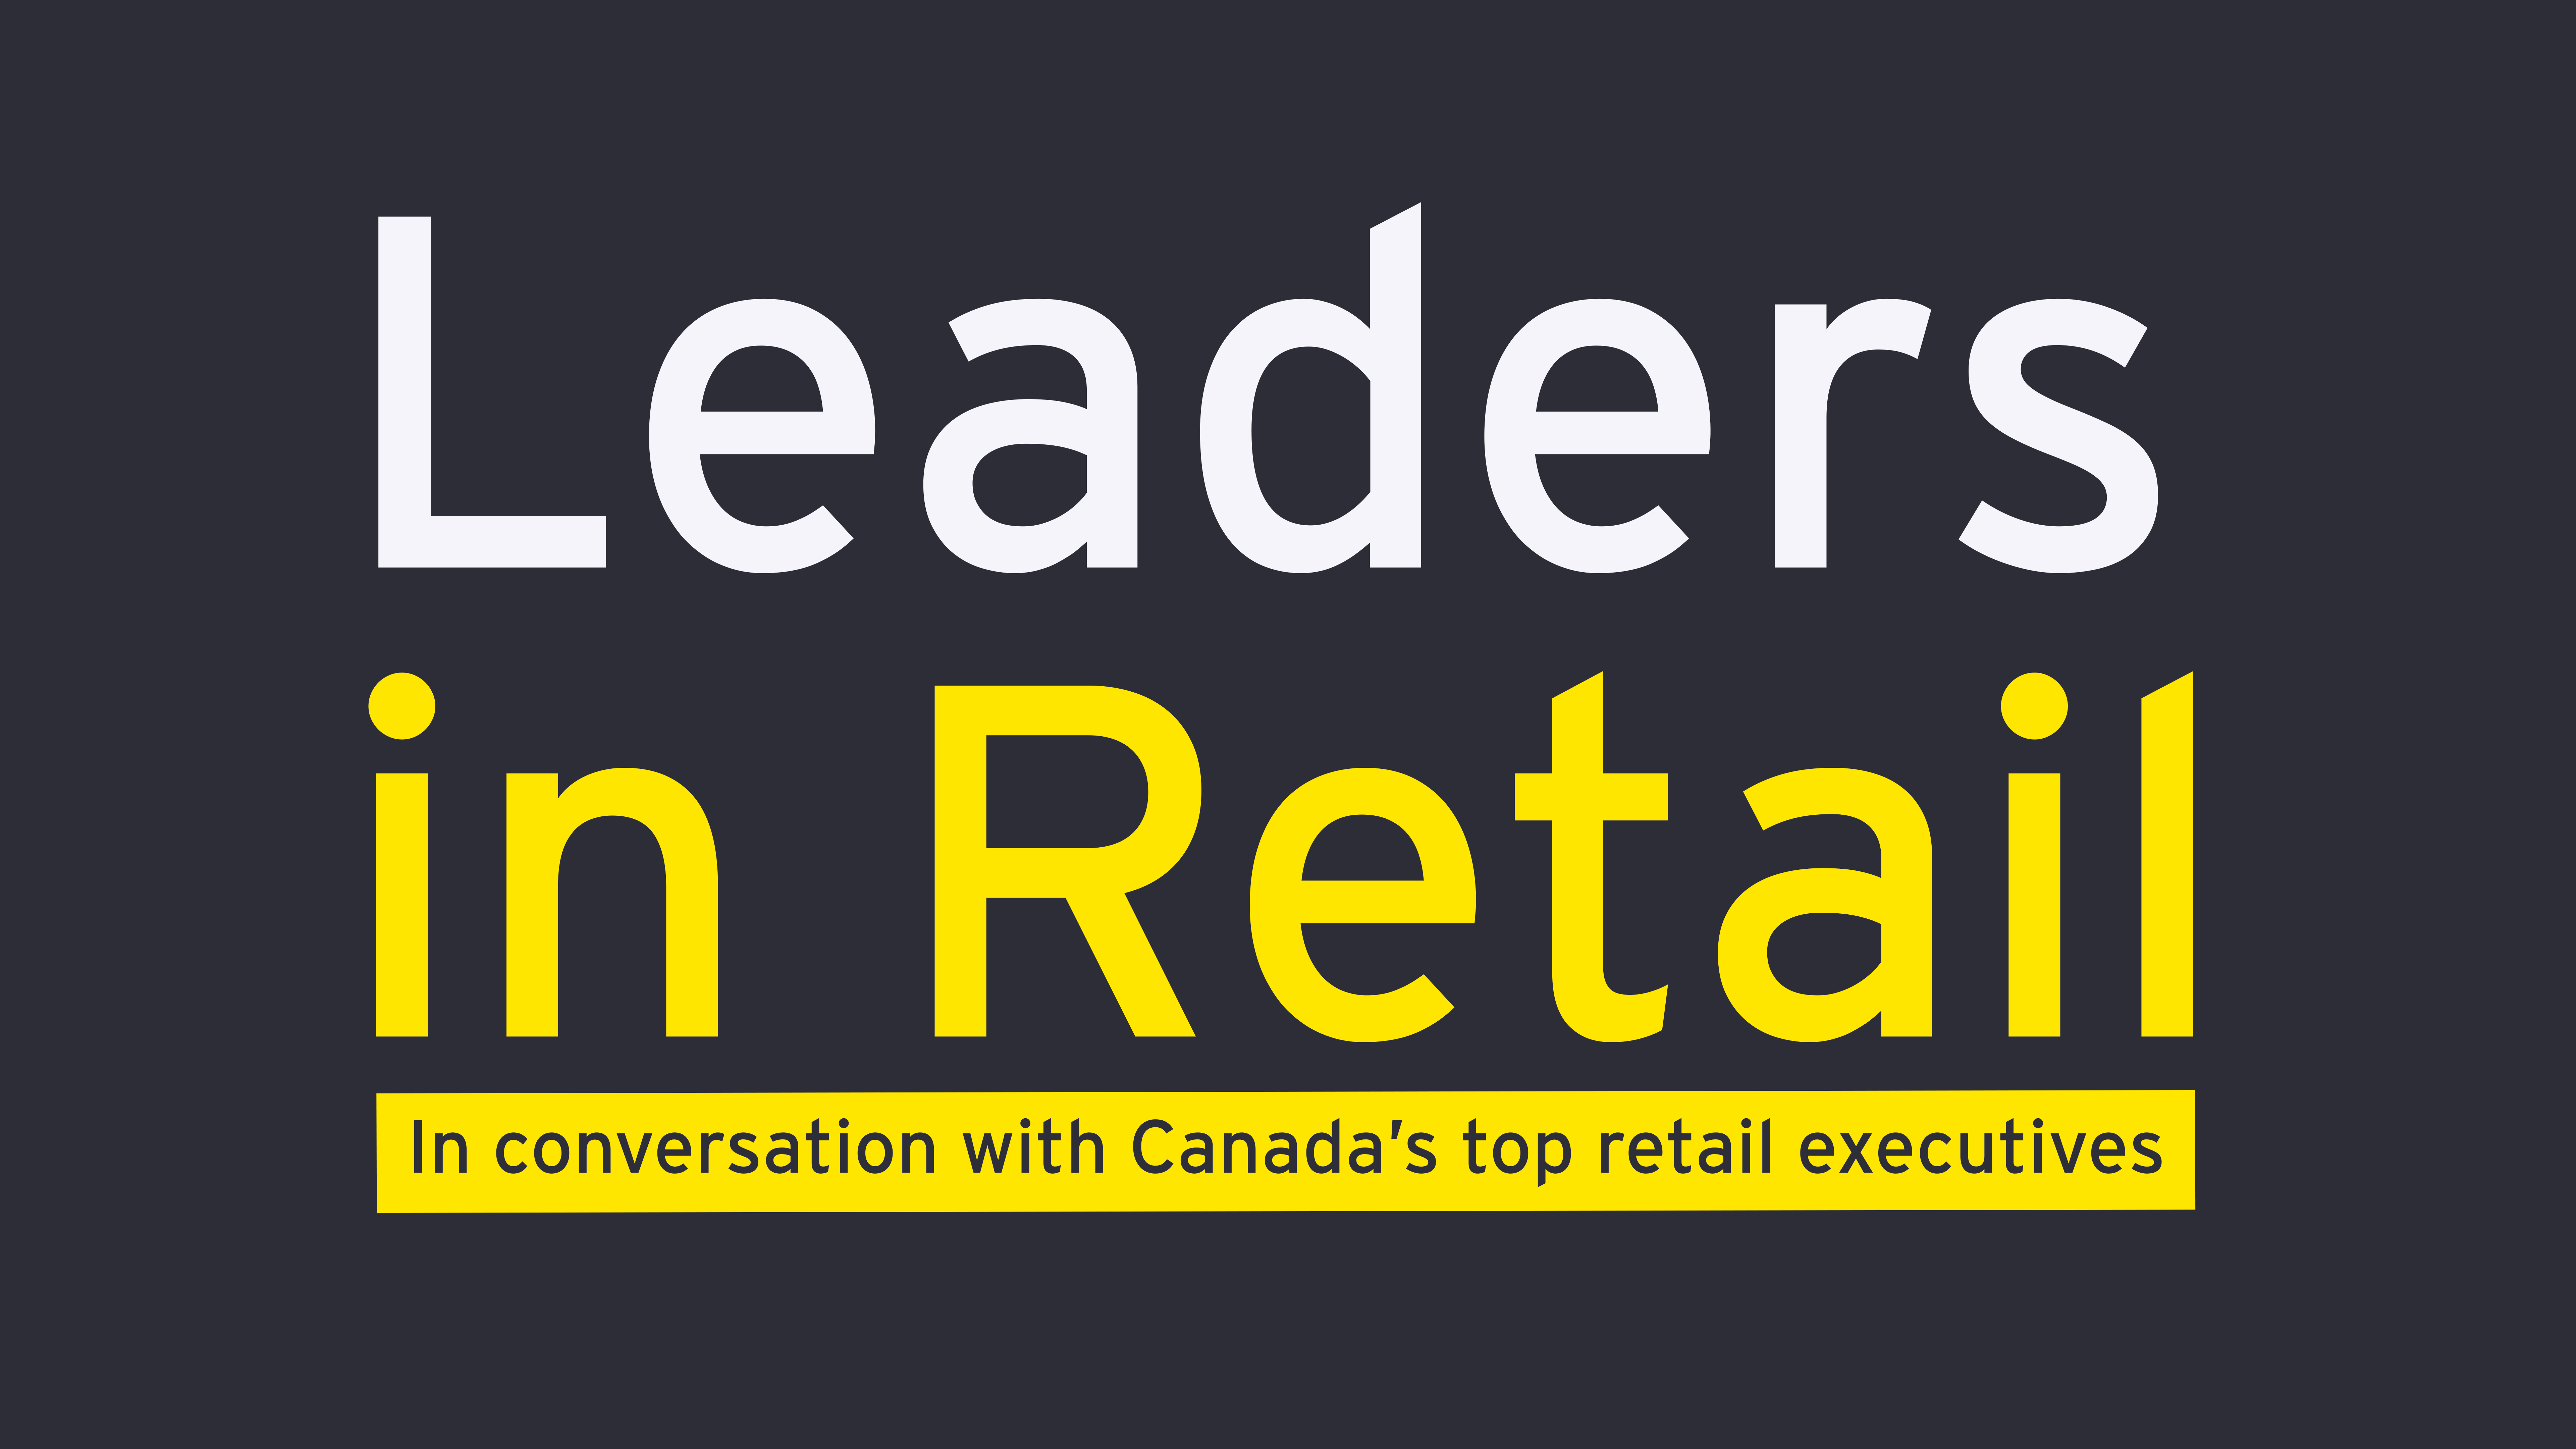 Leaders in Retail